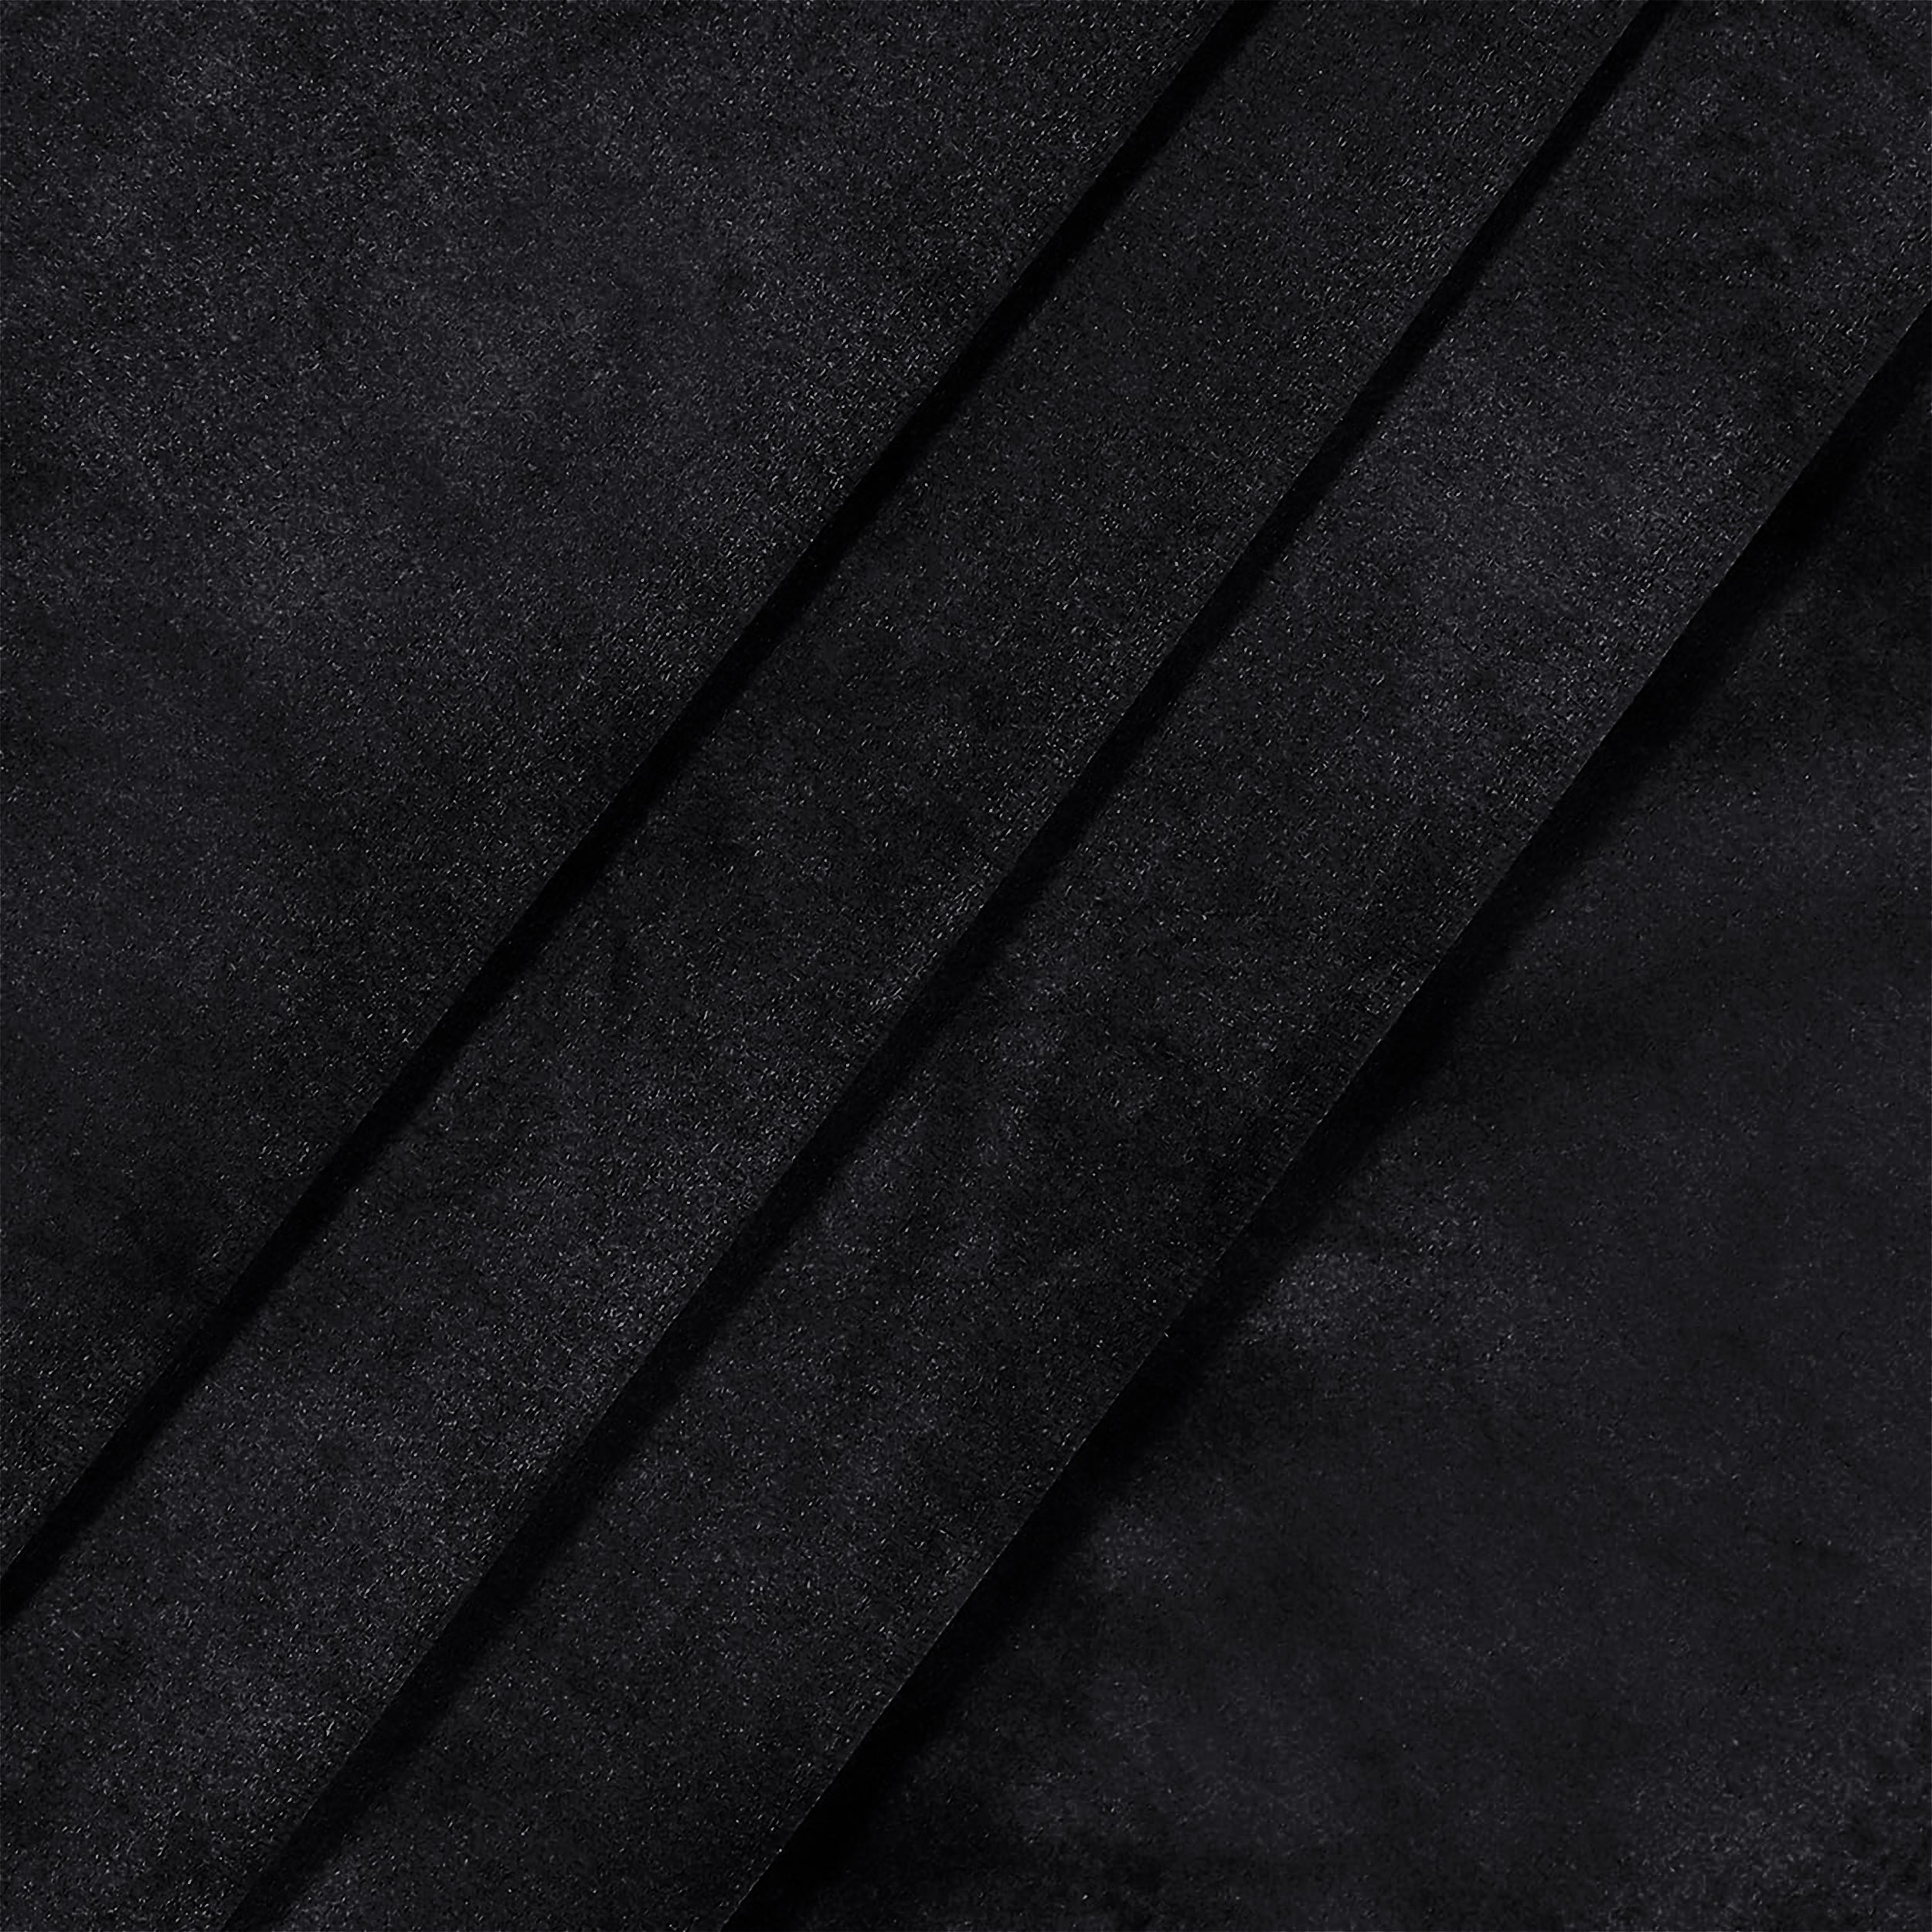 Black Velvet Curtains Ready Made Eyelet